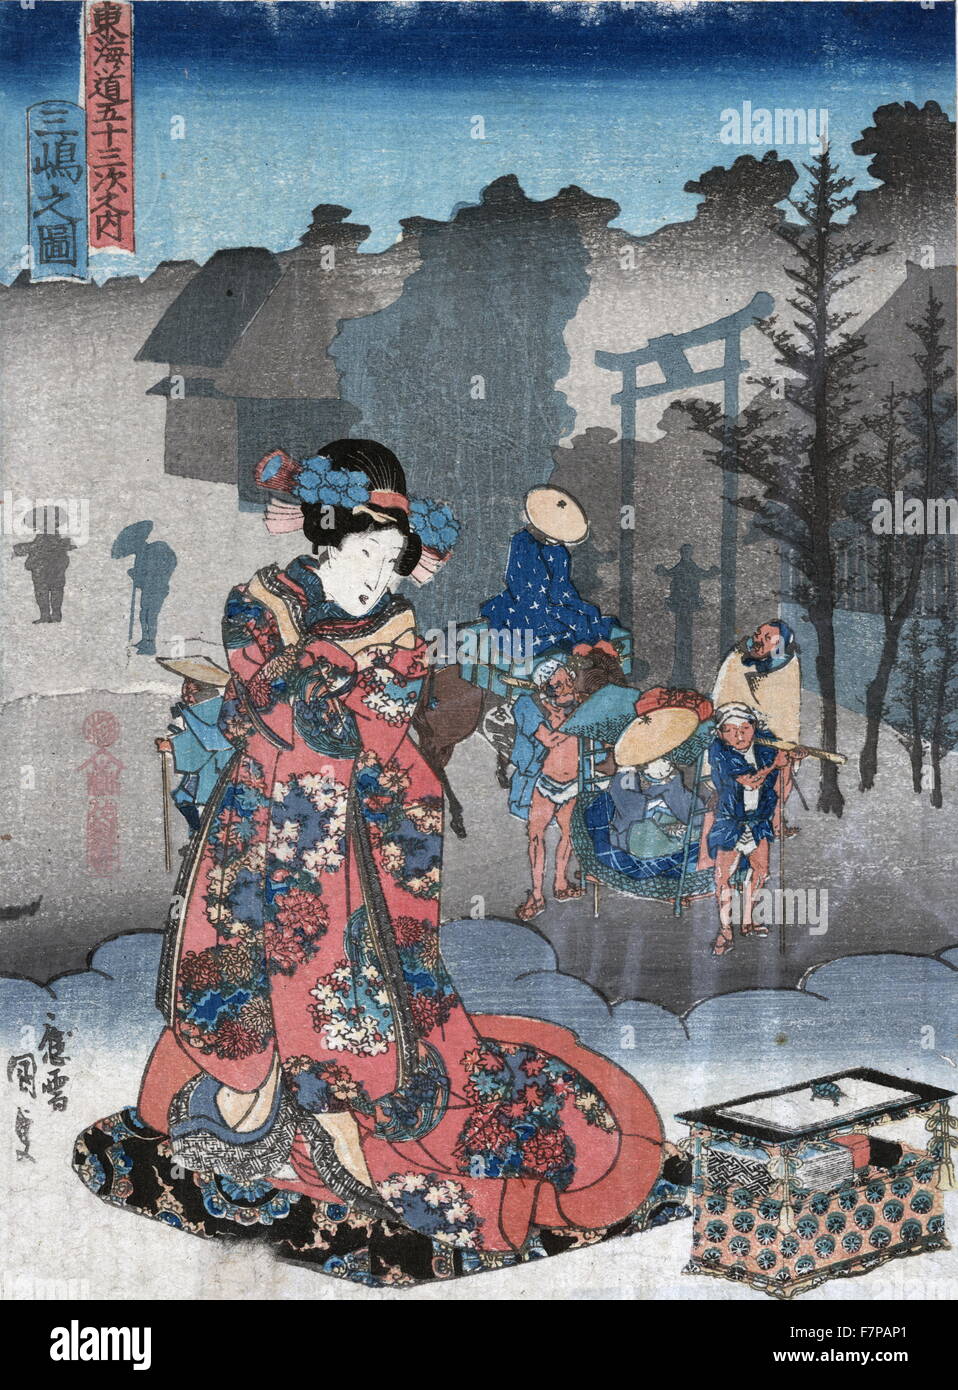 Ansicht von Mishima von Toyokuni Utagawa (1835-1838). Farbe Holzschnitt Drucken einer Frau stehen neben einem Feld auf einer Wolke beobachten Träger eine Person in einer Sänfte tragen, wie sie die Mishima-Schrein, der 12. Station auf der Tokaido-Straße passieren. Stockfoto